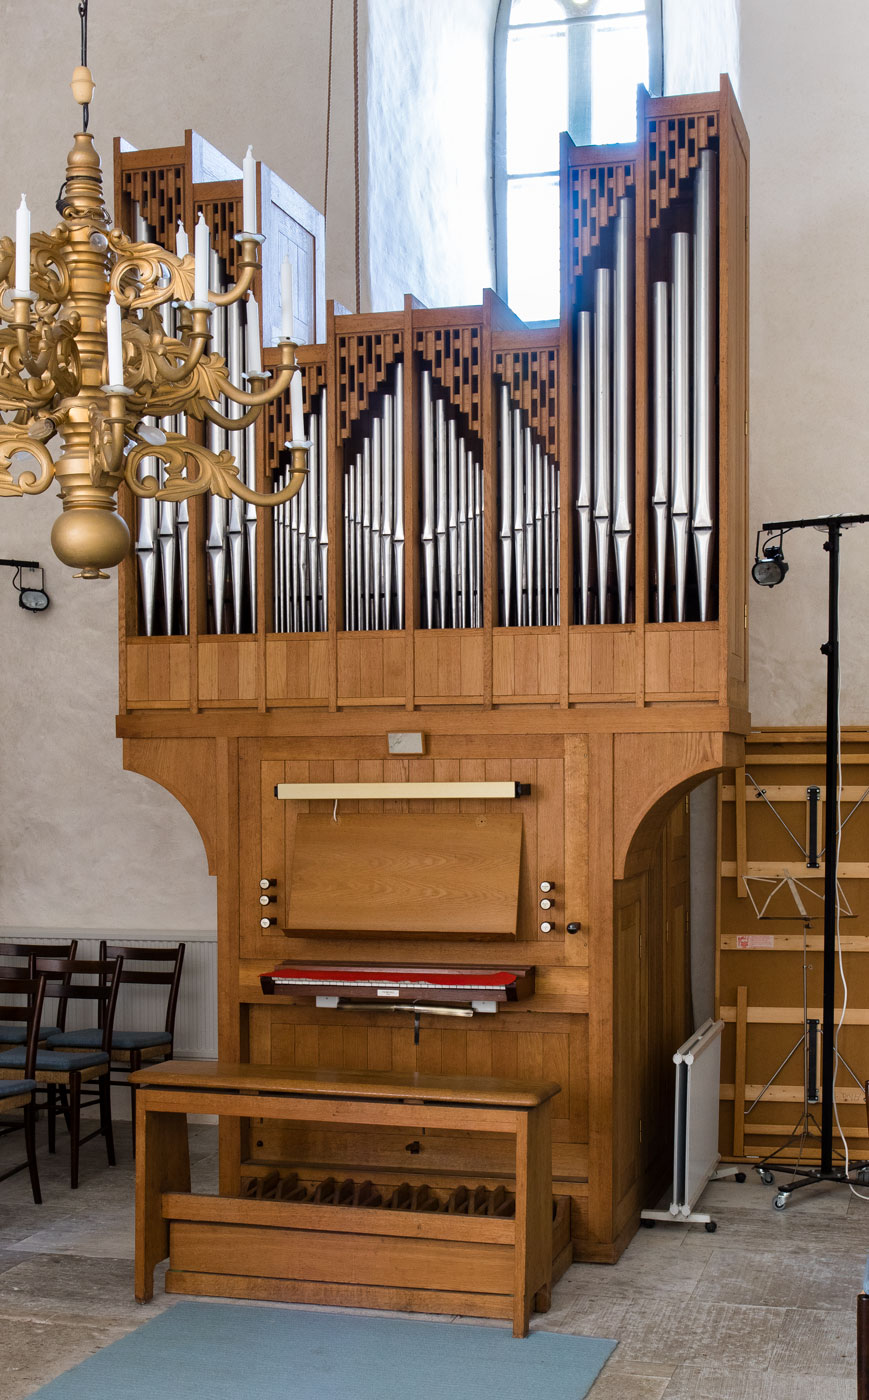 Orgel - Alva kyrka